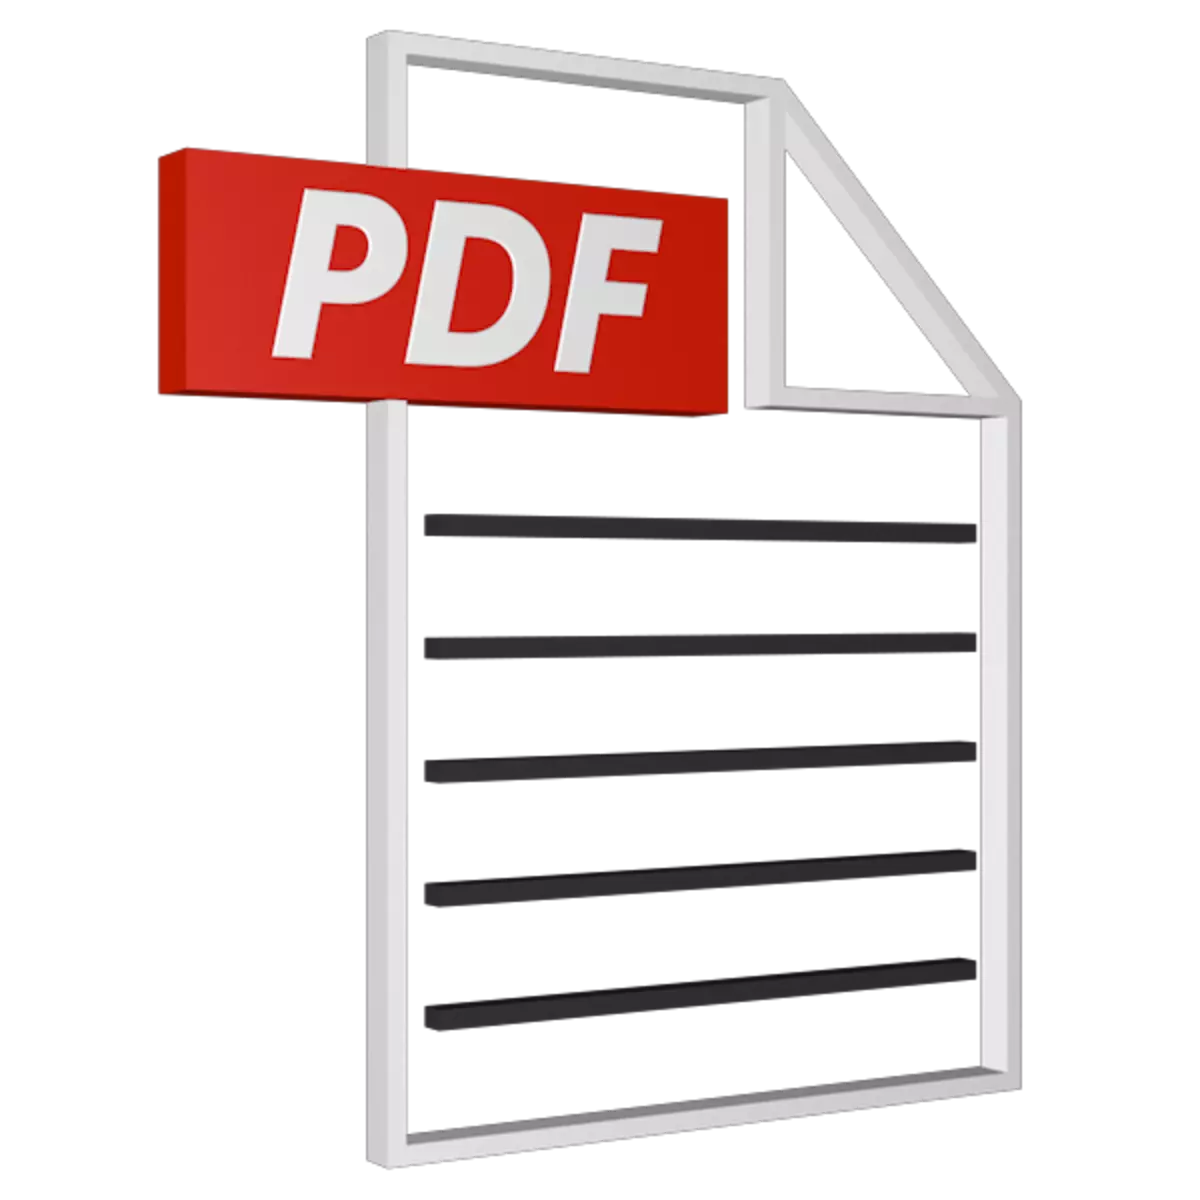 Program pikeun nyiptakeun file PDF